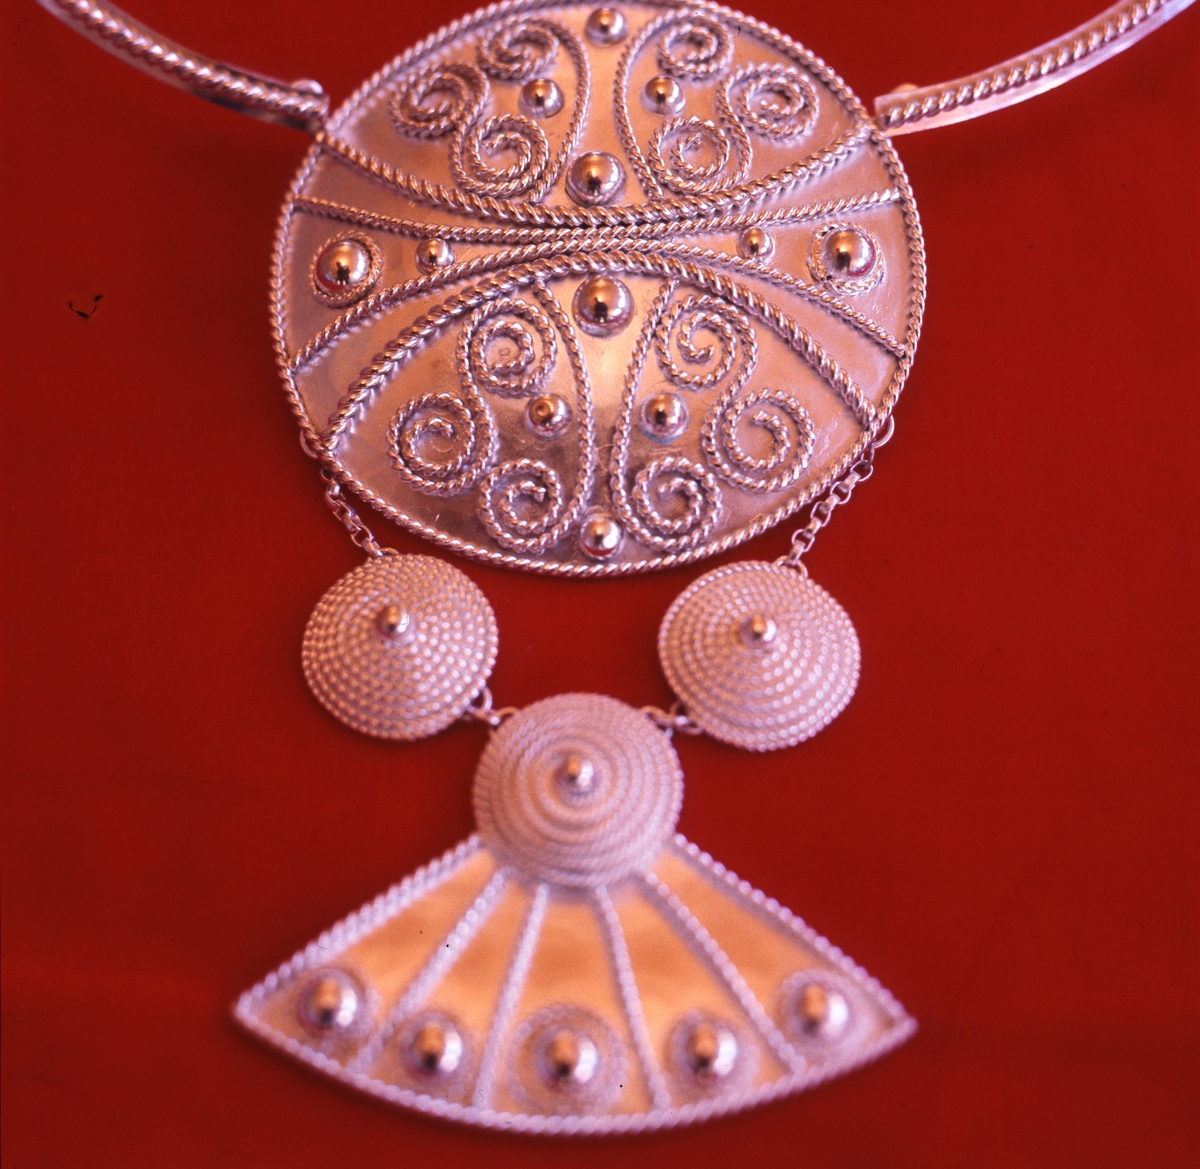 Bröstsmycke i silver av Rosa Taikon. Smycket var del av Taikons examensarbete från Högre konstindustriella skolan, Konstfack 1967, och var en gåva till systern Katarina Taikon.